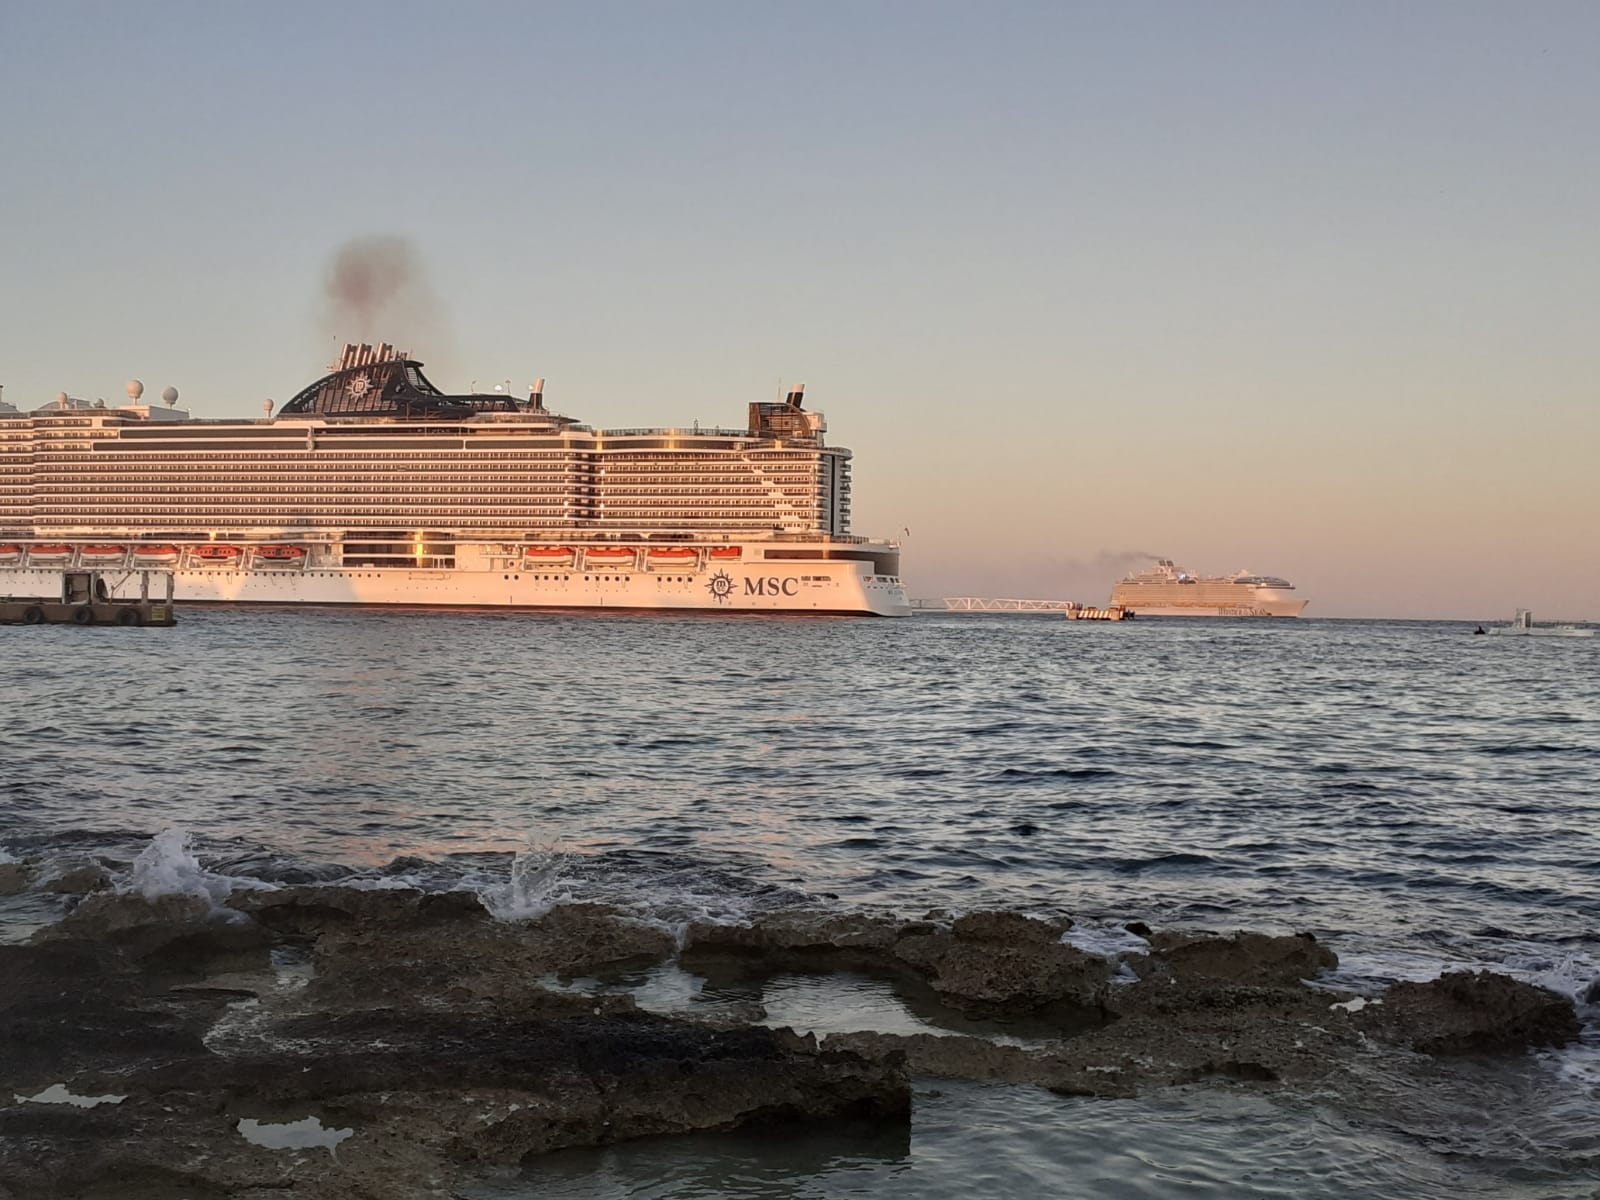 Llega el 'Wonder of the Seas' a Cozumel, el barco más grande del mundo: VIDEO